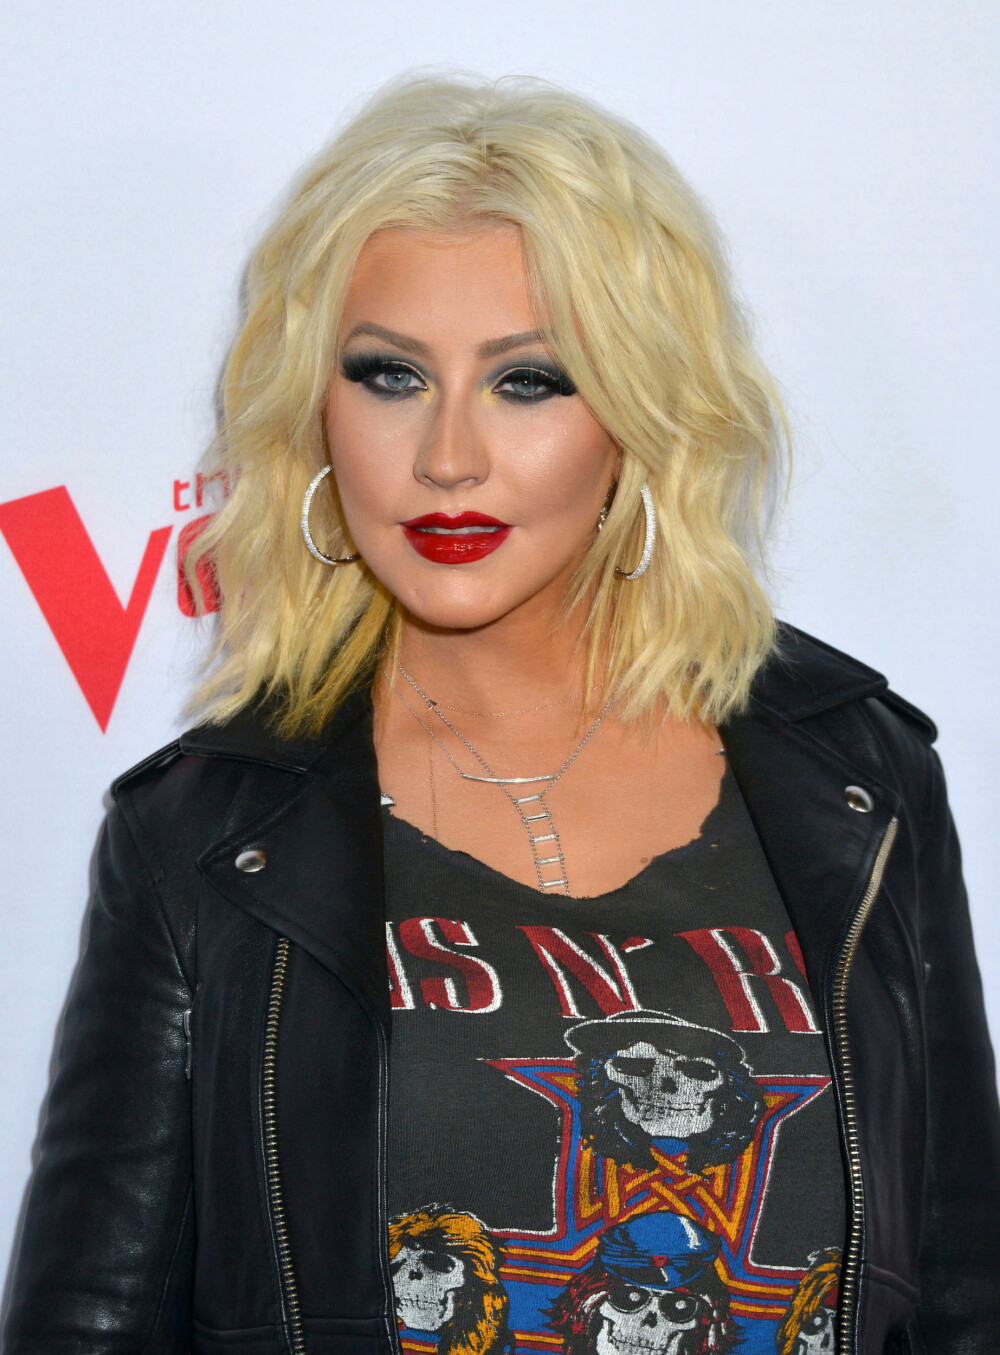 FEIL BRYNSFARGE: Christina Aguilera kunne med fordel gått for en litt varmere tone på brynene sine.